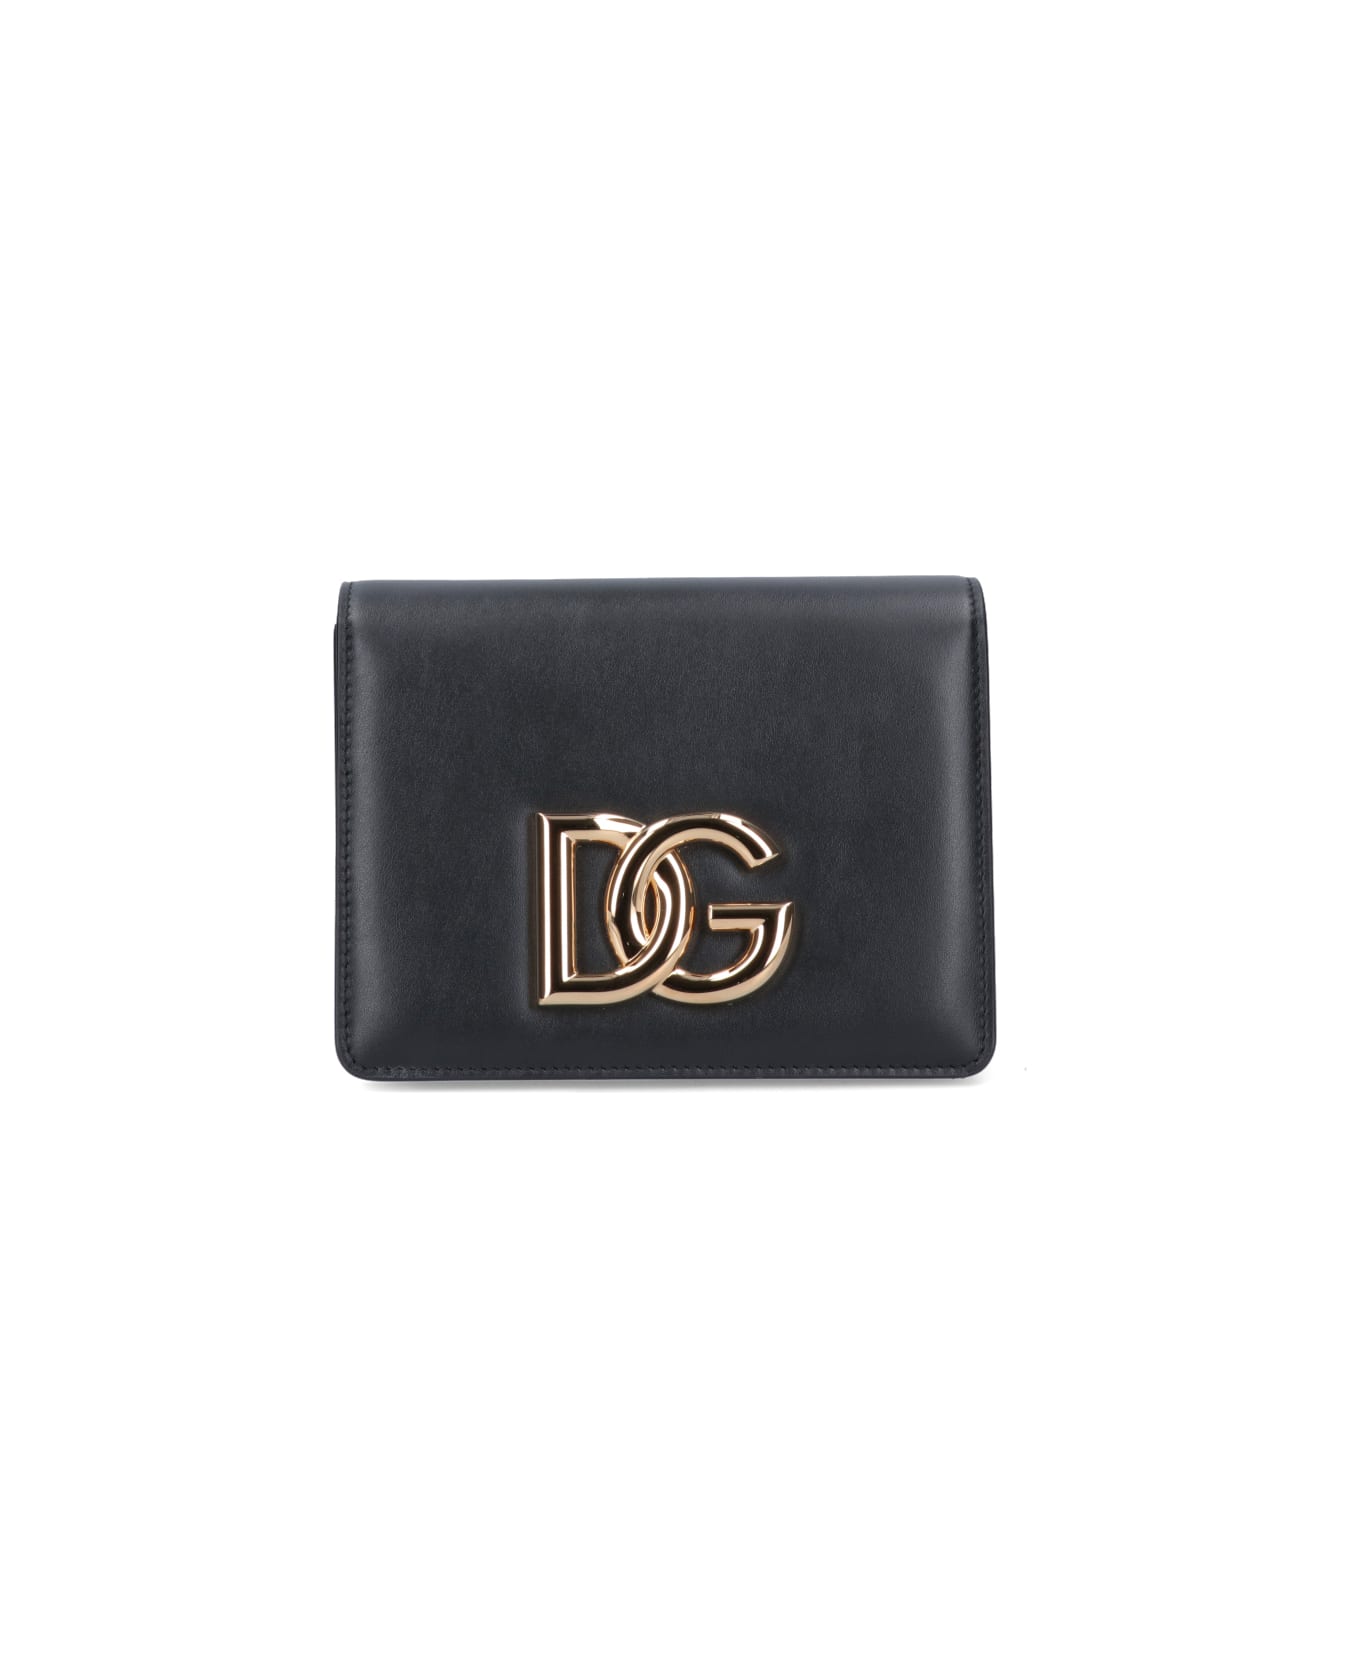 Dolce & Gabbana "3.5" Shoulder Bag - Black  